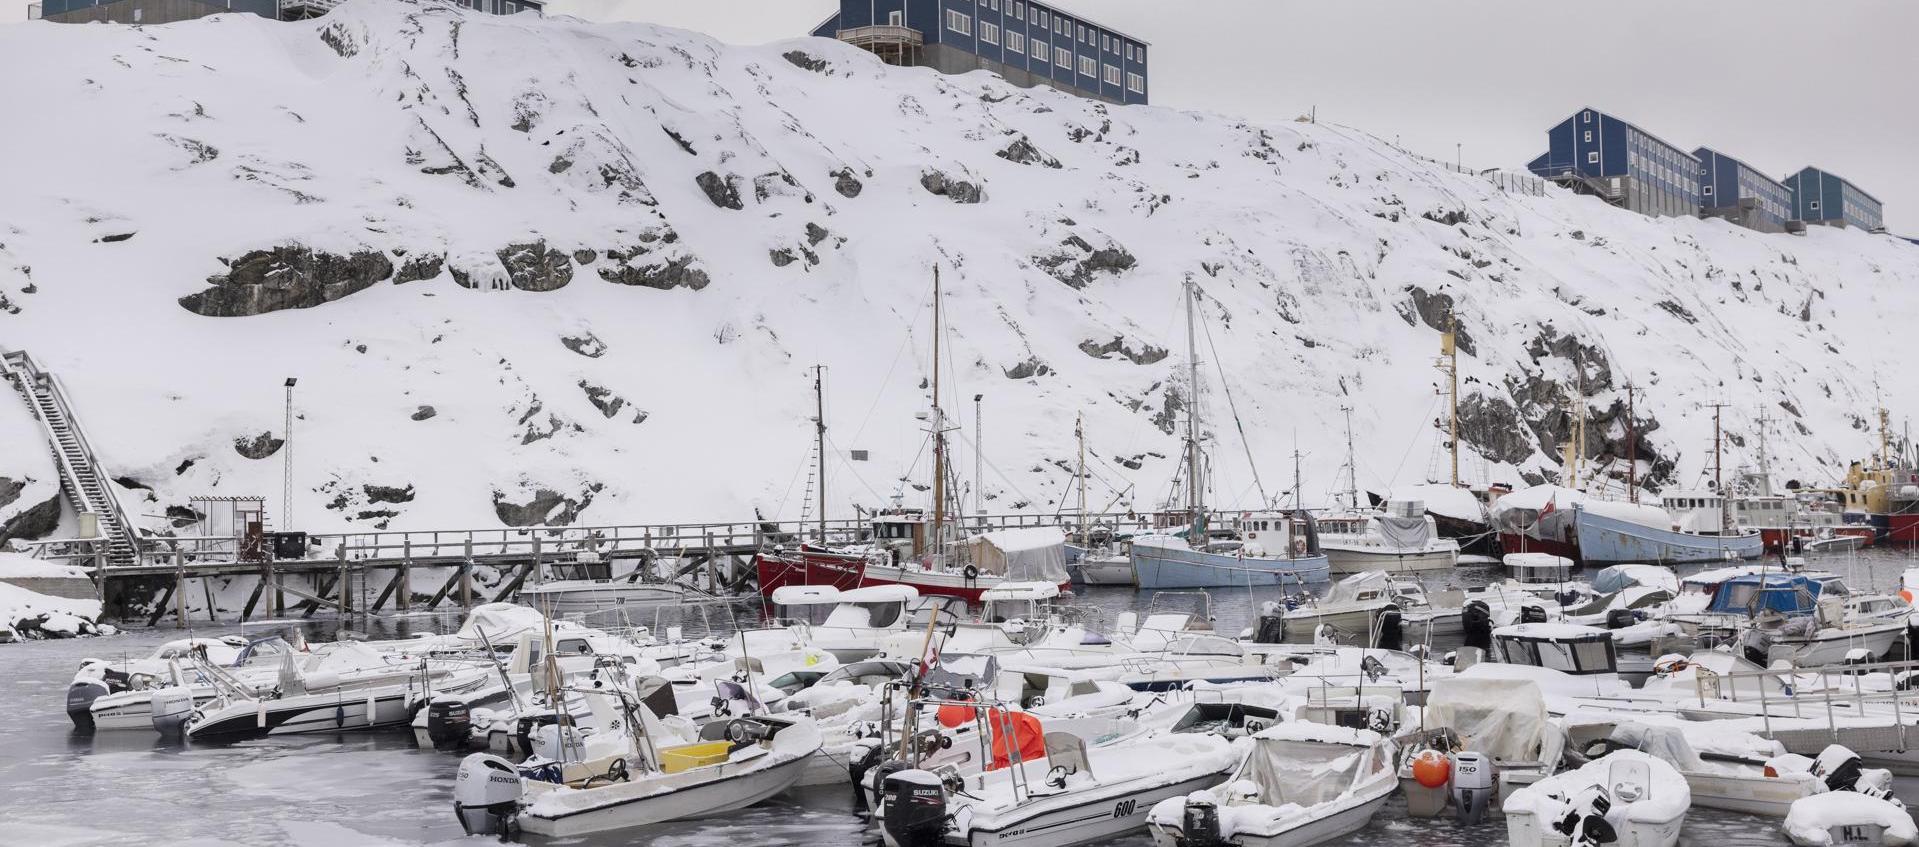 En la imagen de archivo, botes de pesca en Vestervig, Nuuk, Groenlandia.